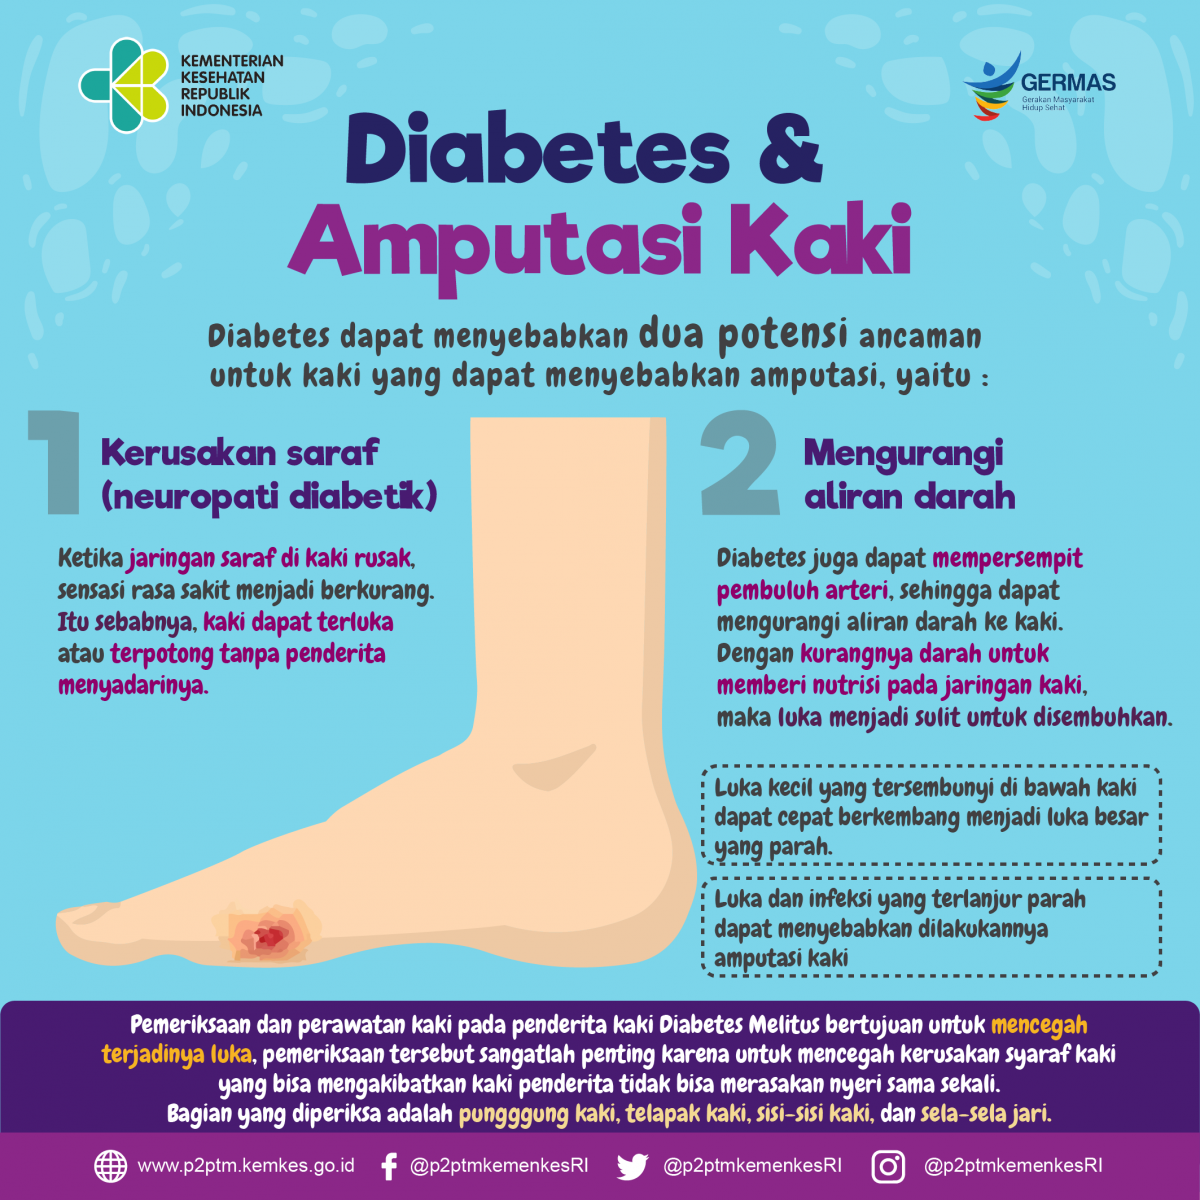 Mengapa Diabetes yang tidak terkontrol berpotensi menyebabkan amputasi kaki ?